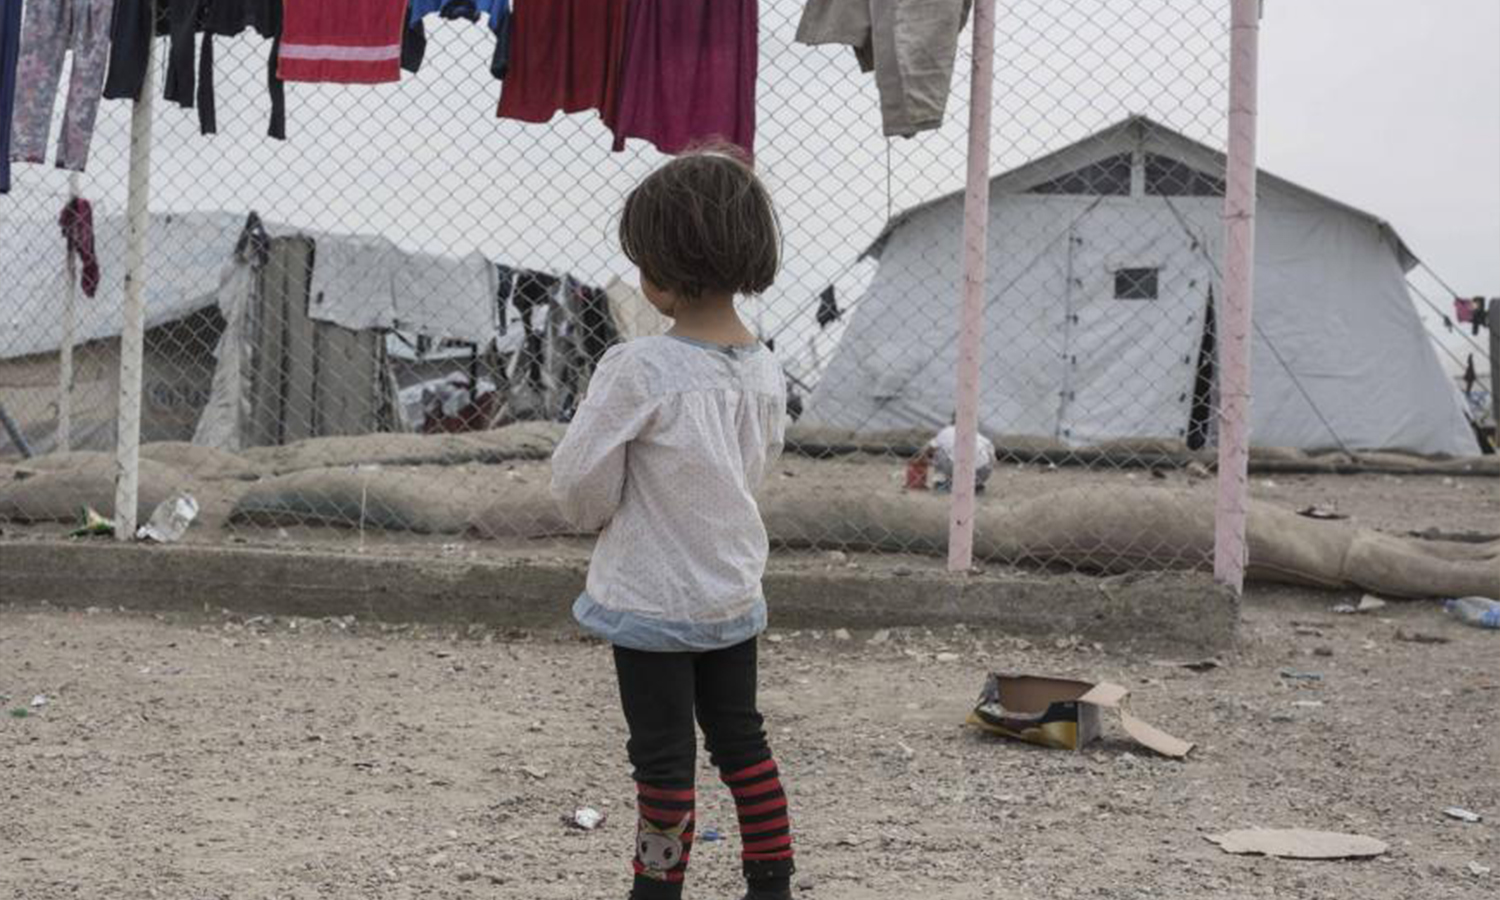 فتاة تقف في مخيم الهول في شمال شرق سوريا حيث تُحتجز آلاف النساء والأطفال من بلدان بينها كندا لكونهم أقارب من يشتبه في كونهم من تنظيم "الدولة" - 2019 (سام تارلنغ)